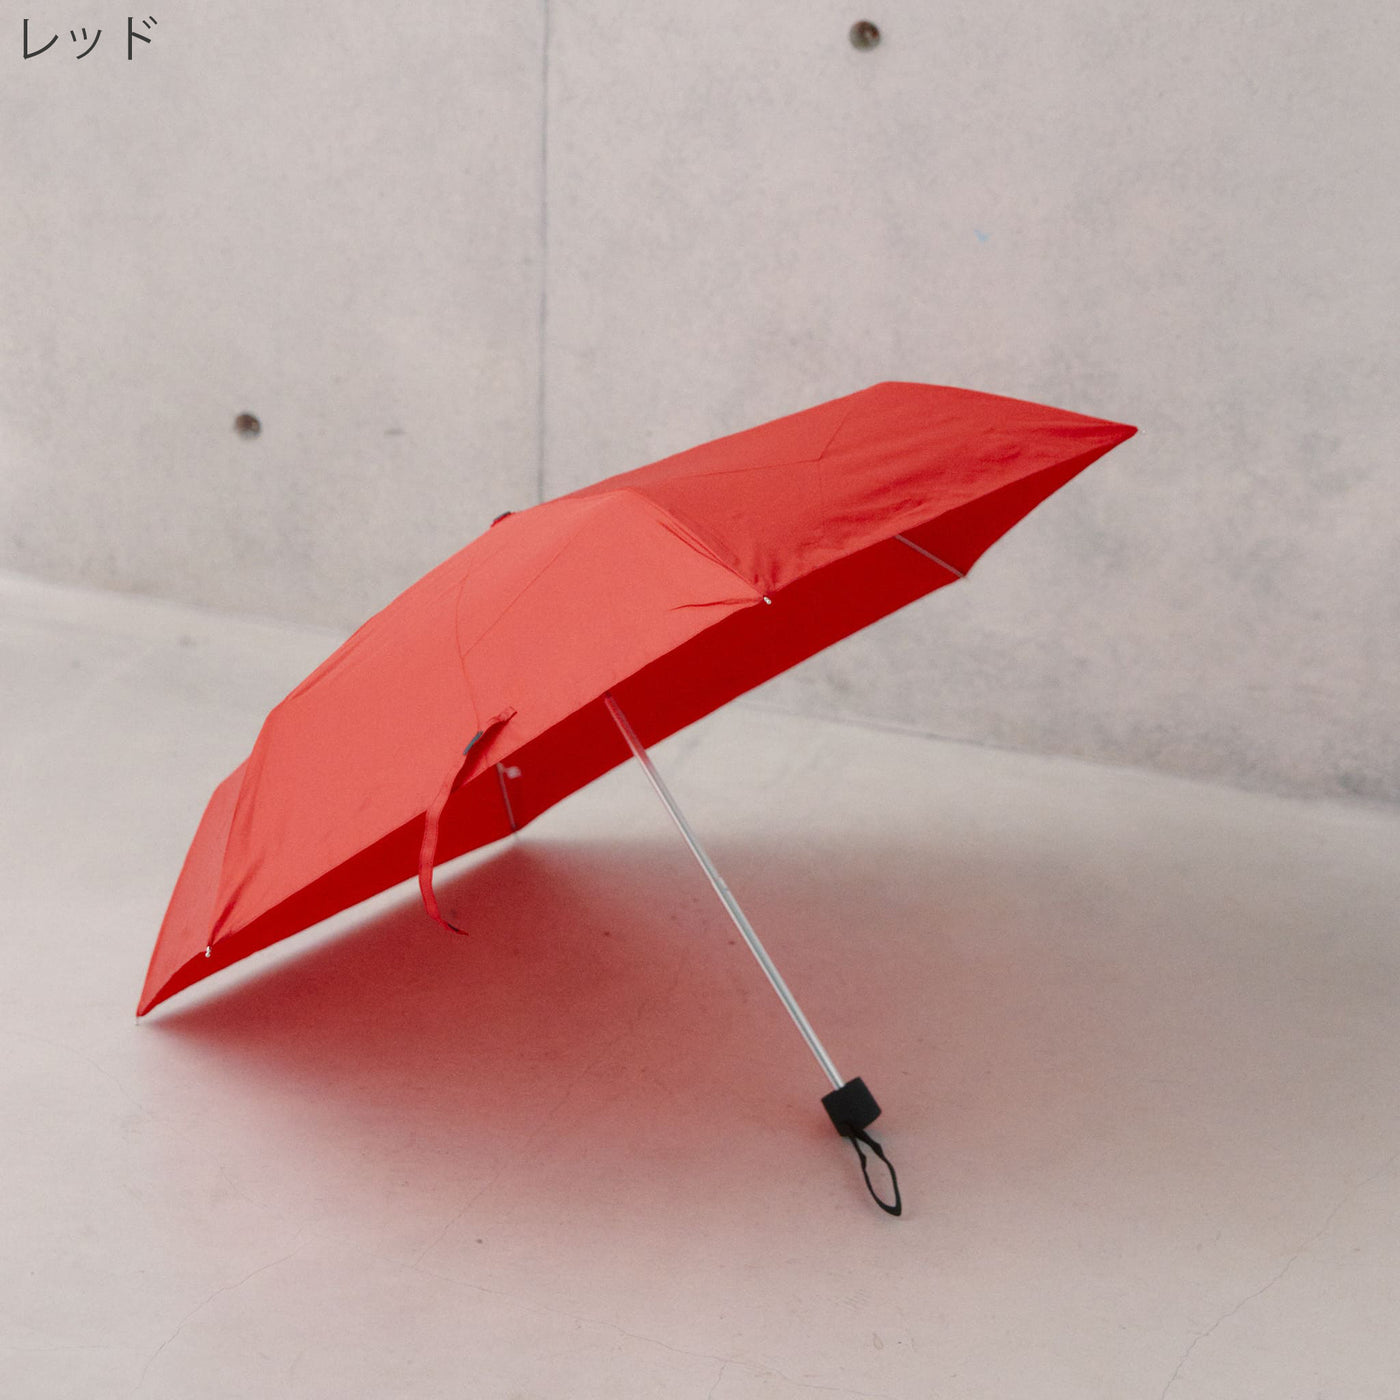 どんな場所でもどんな天気でも安心して使える傘